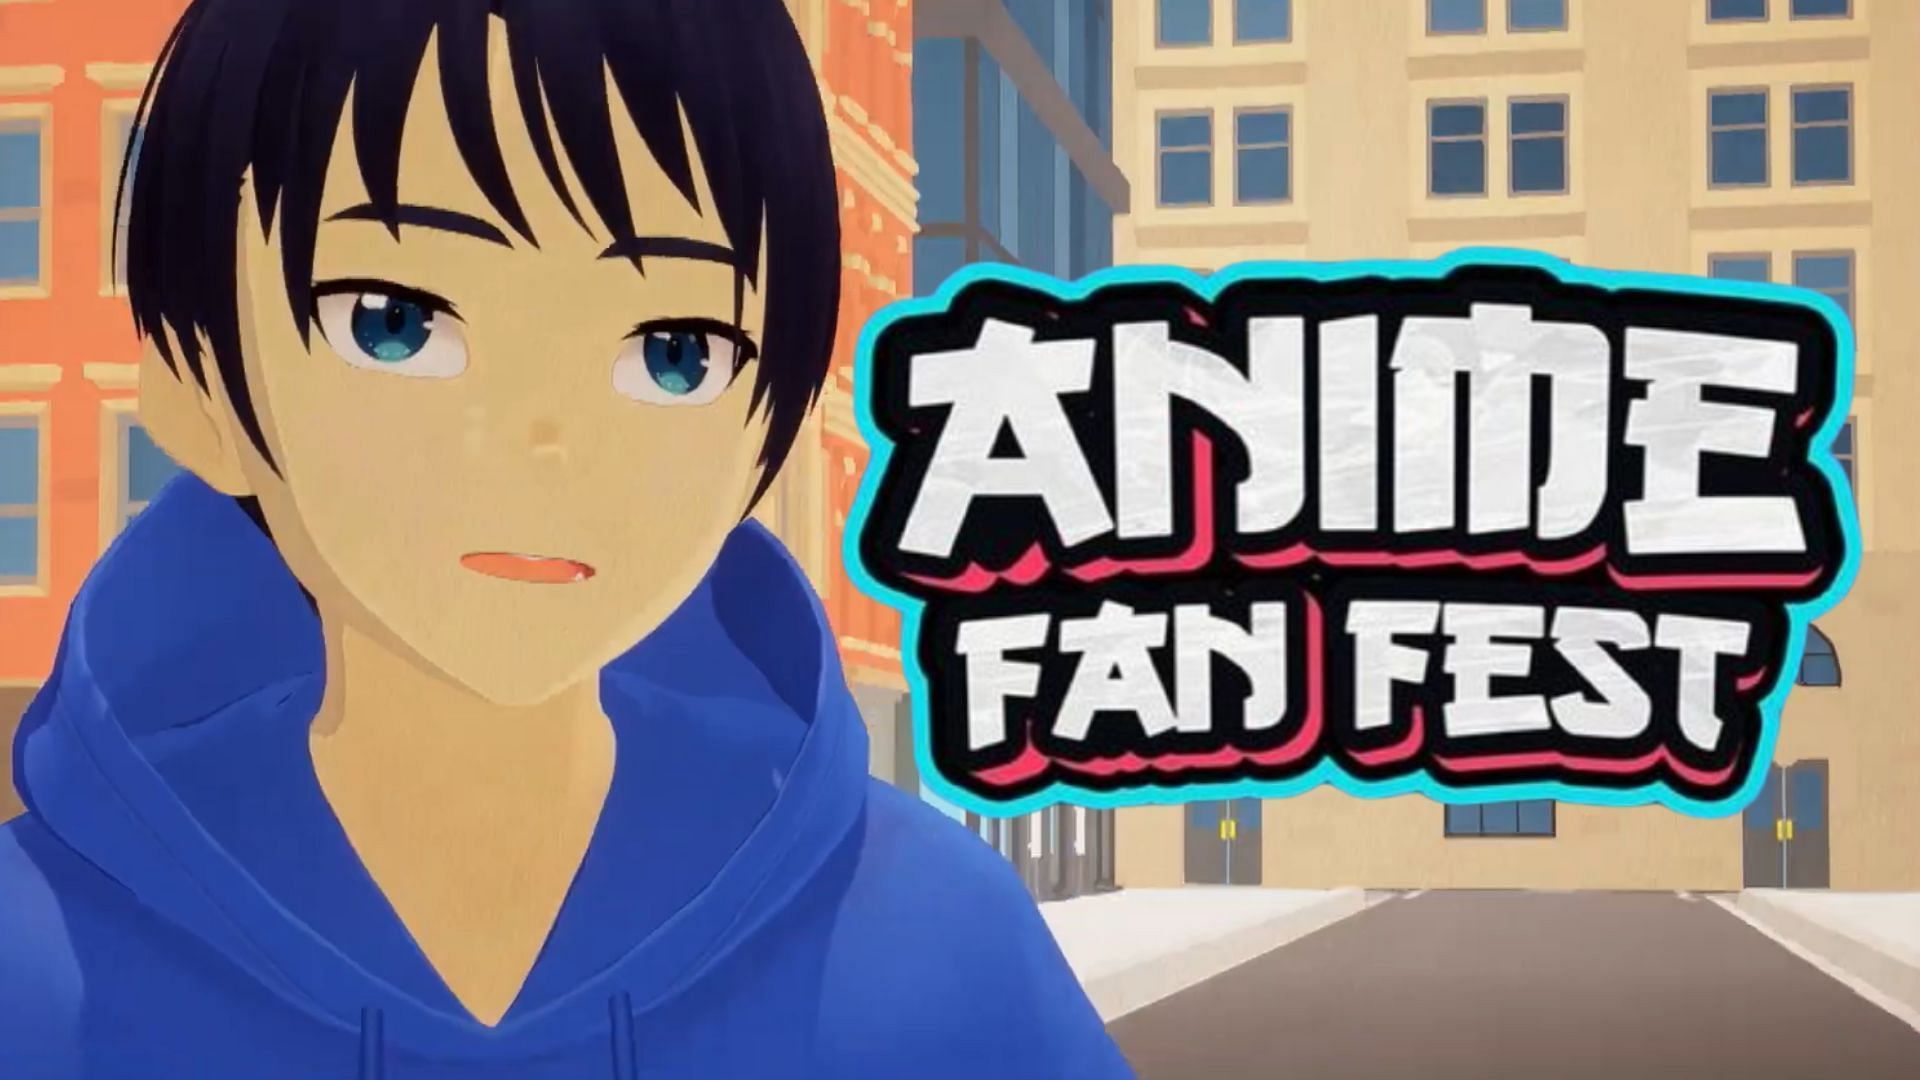 Zee Cafe Anime Fan Fest 2023